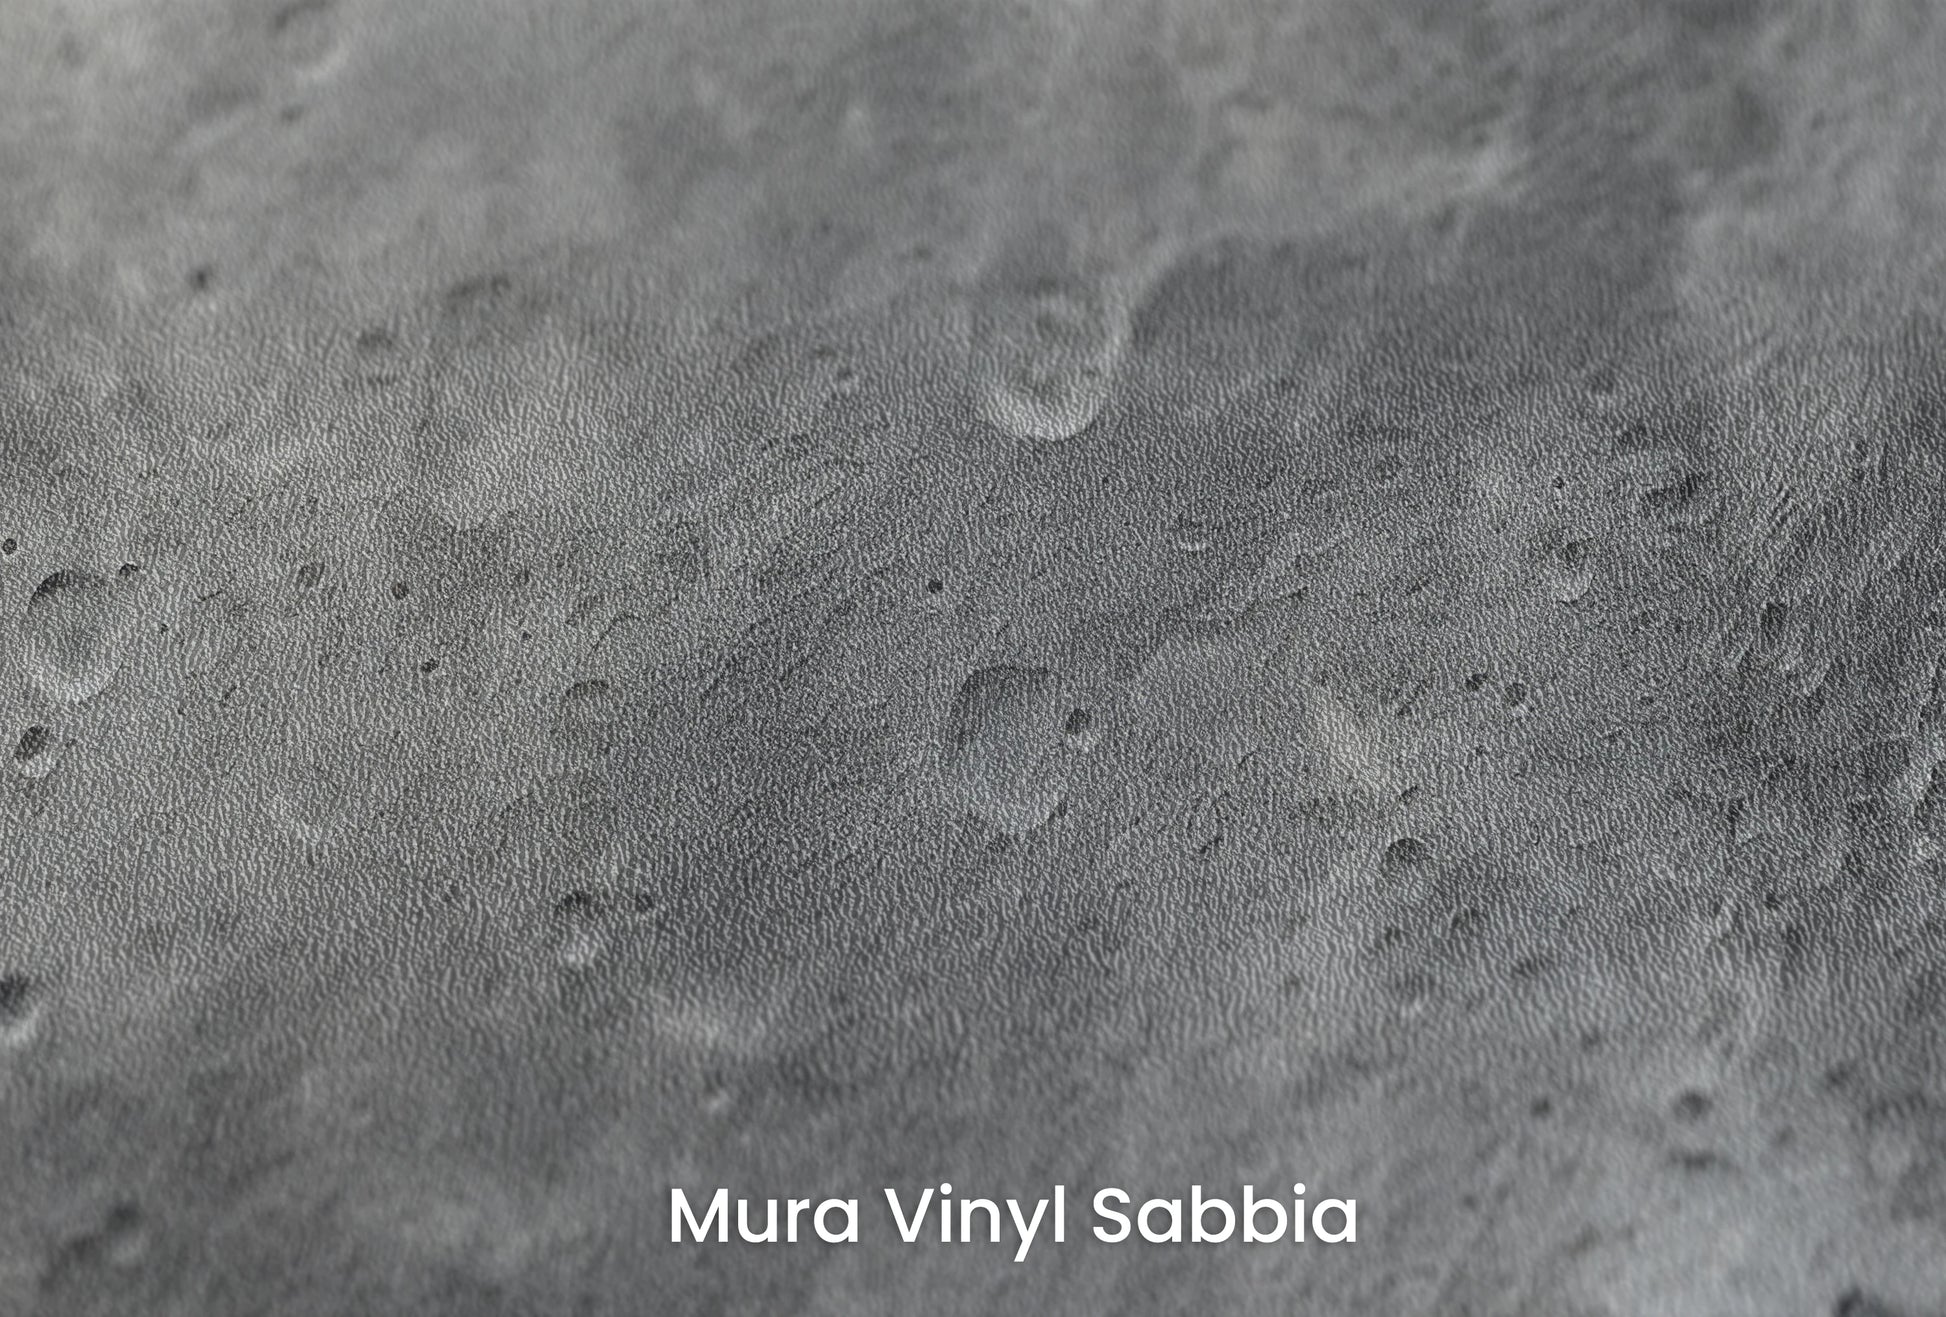 Zbliżenie na artystyczną fototapetę o nazwie Monochrome Moon na podłożu Mura Vinyl Sabbia struktura grubego ziarna piasku.